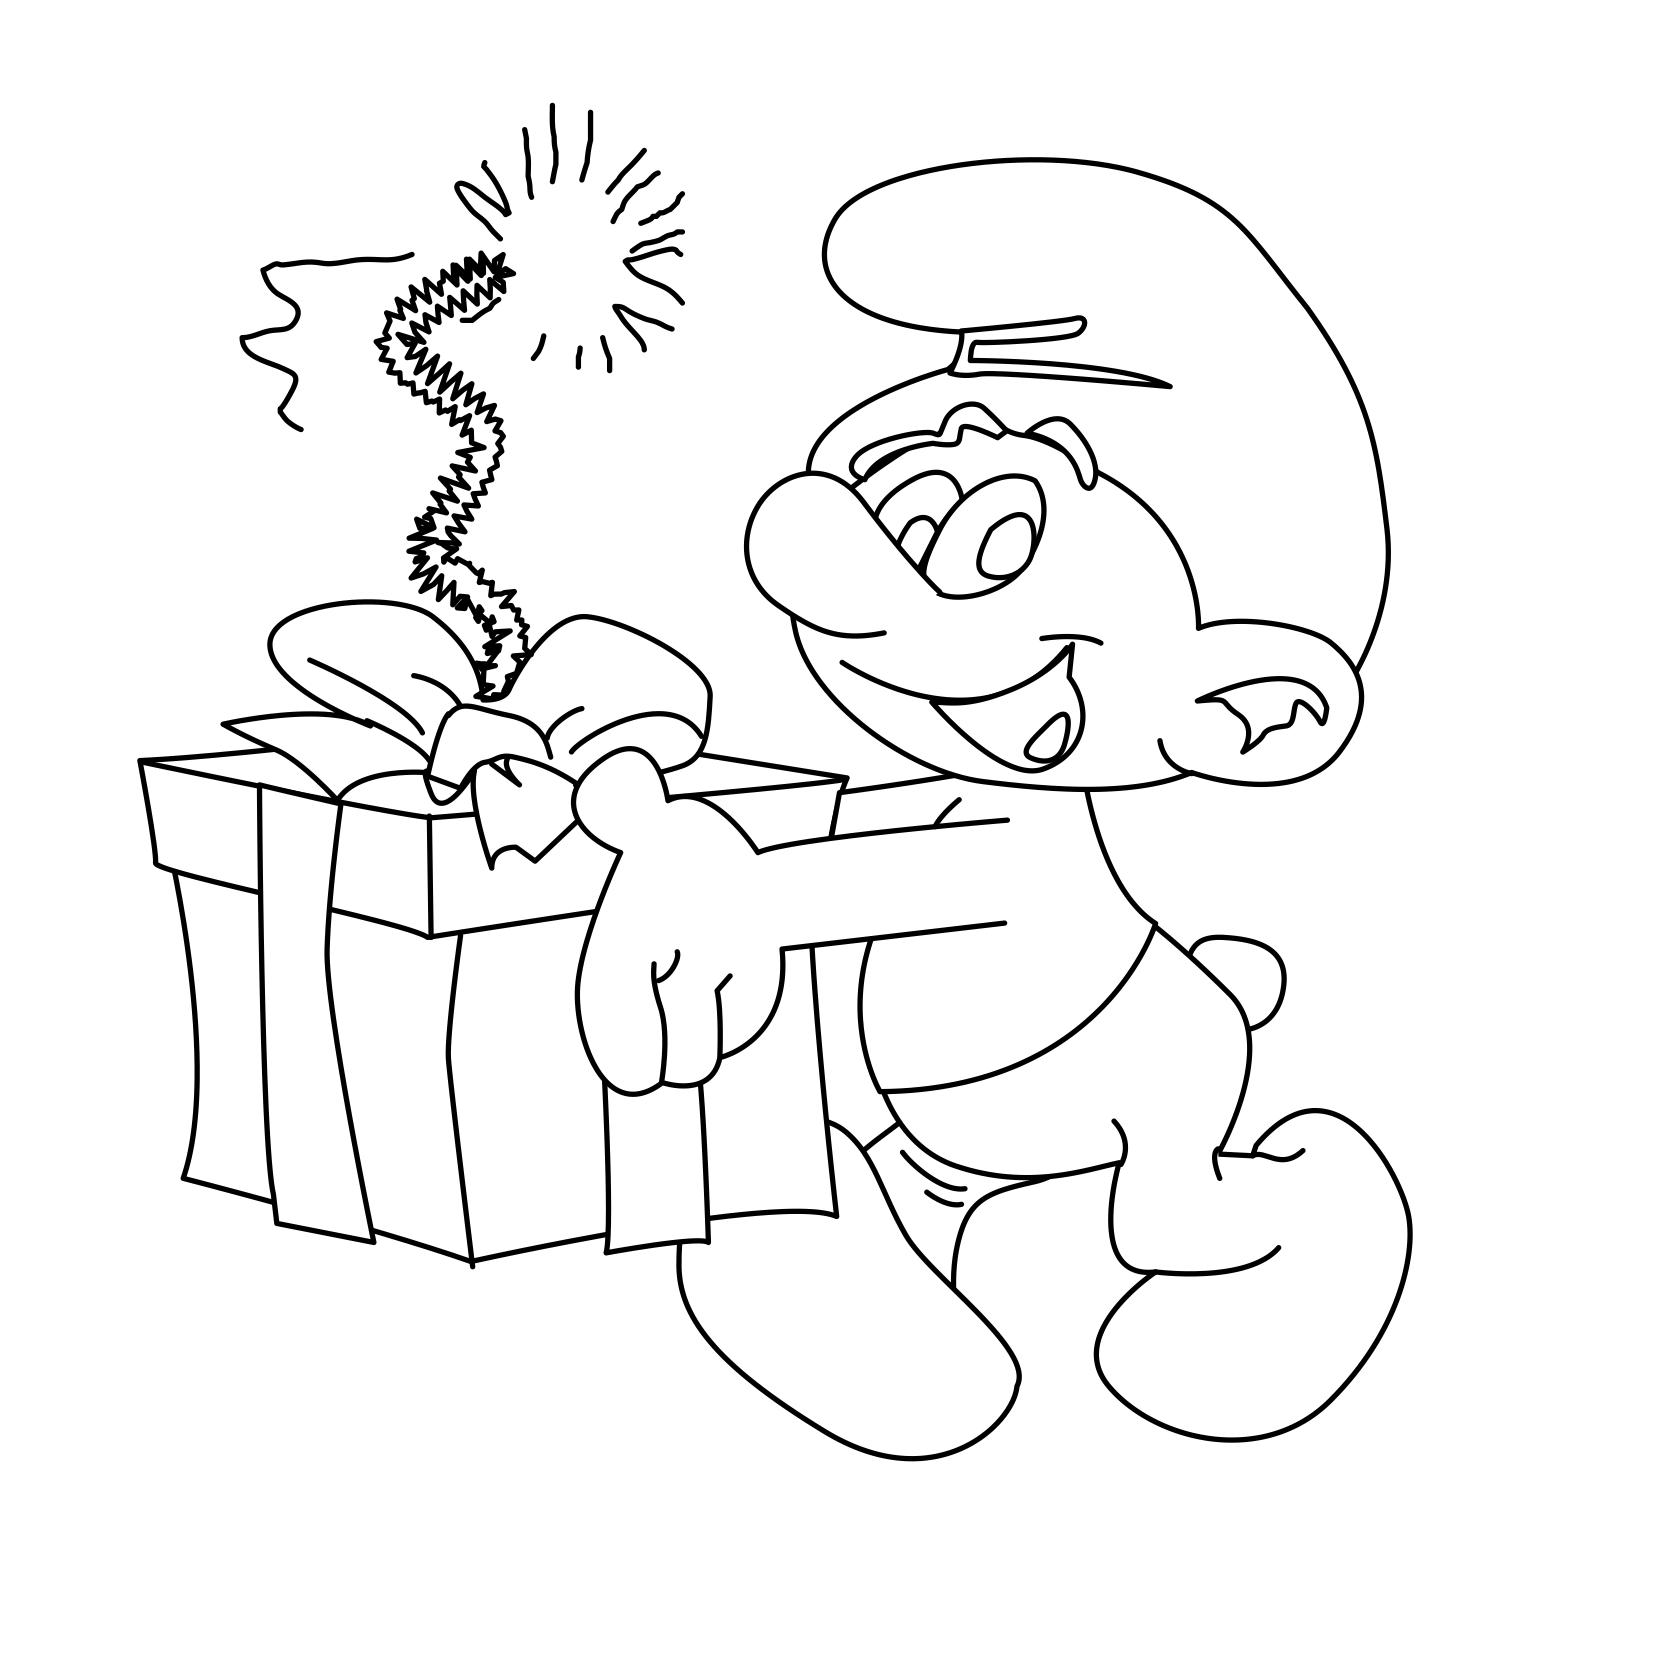  Раскраска Смурфик с подарочной коробкой и подожженным на ней фителем